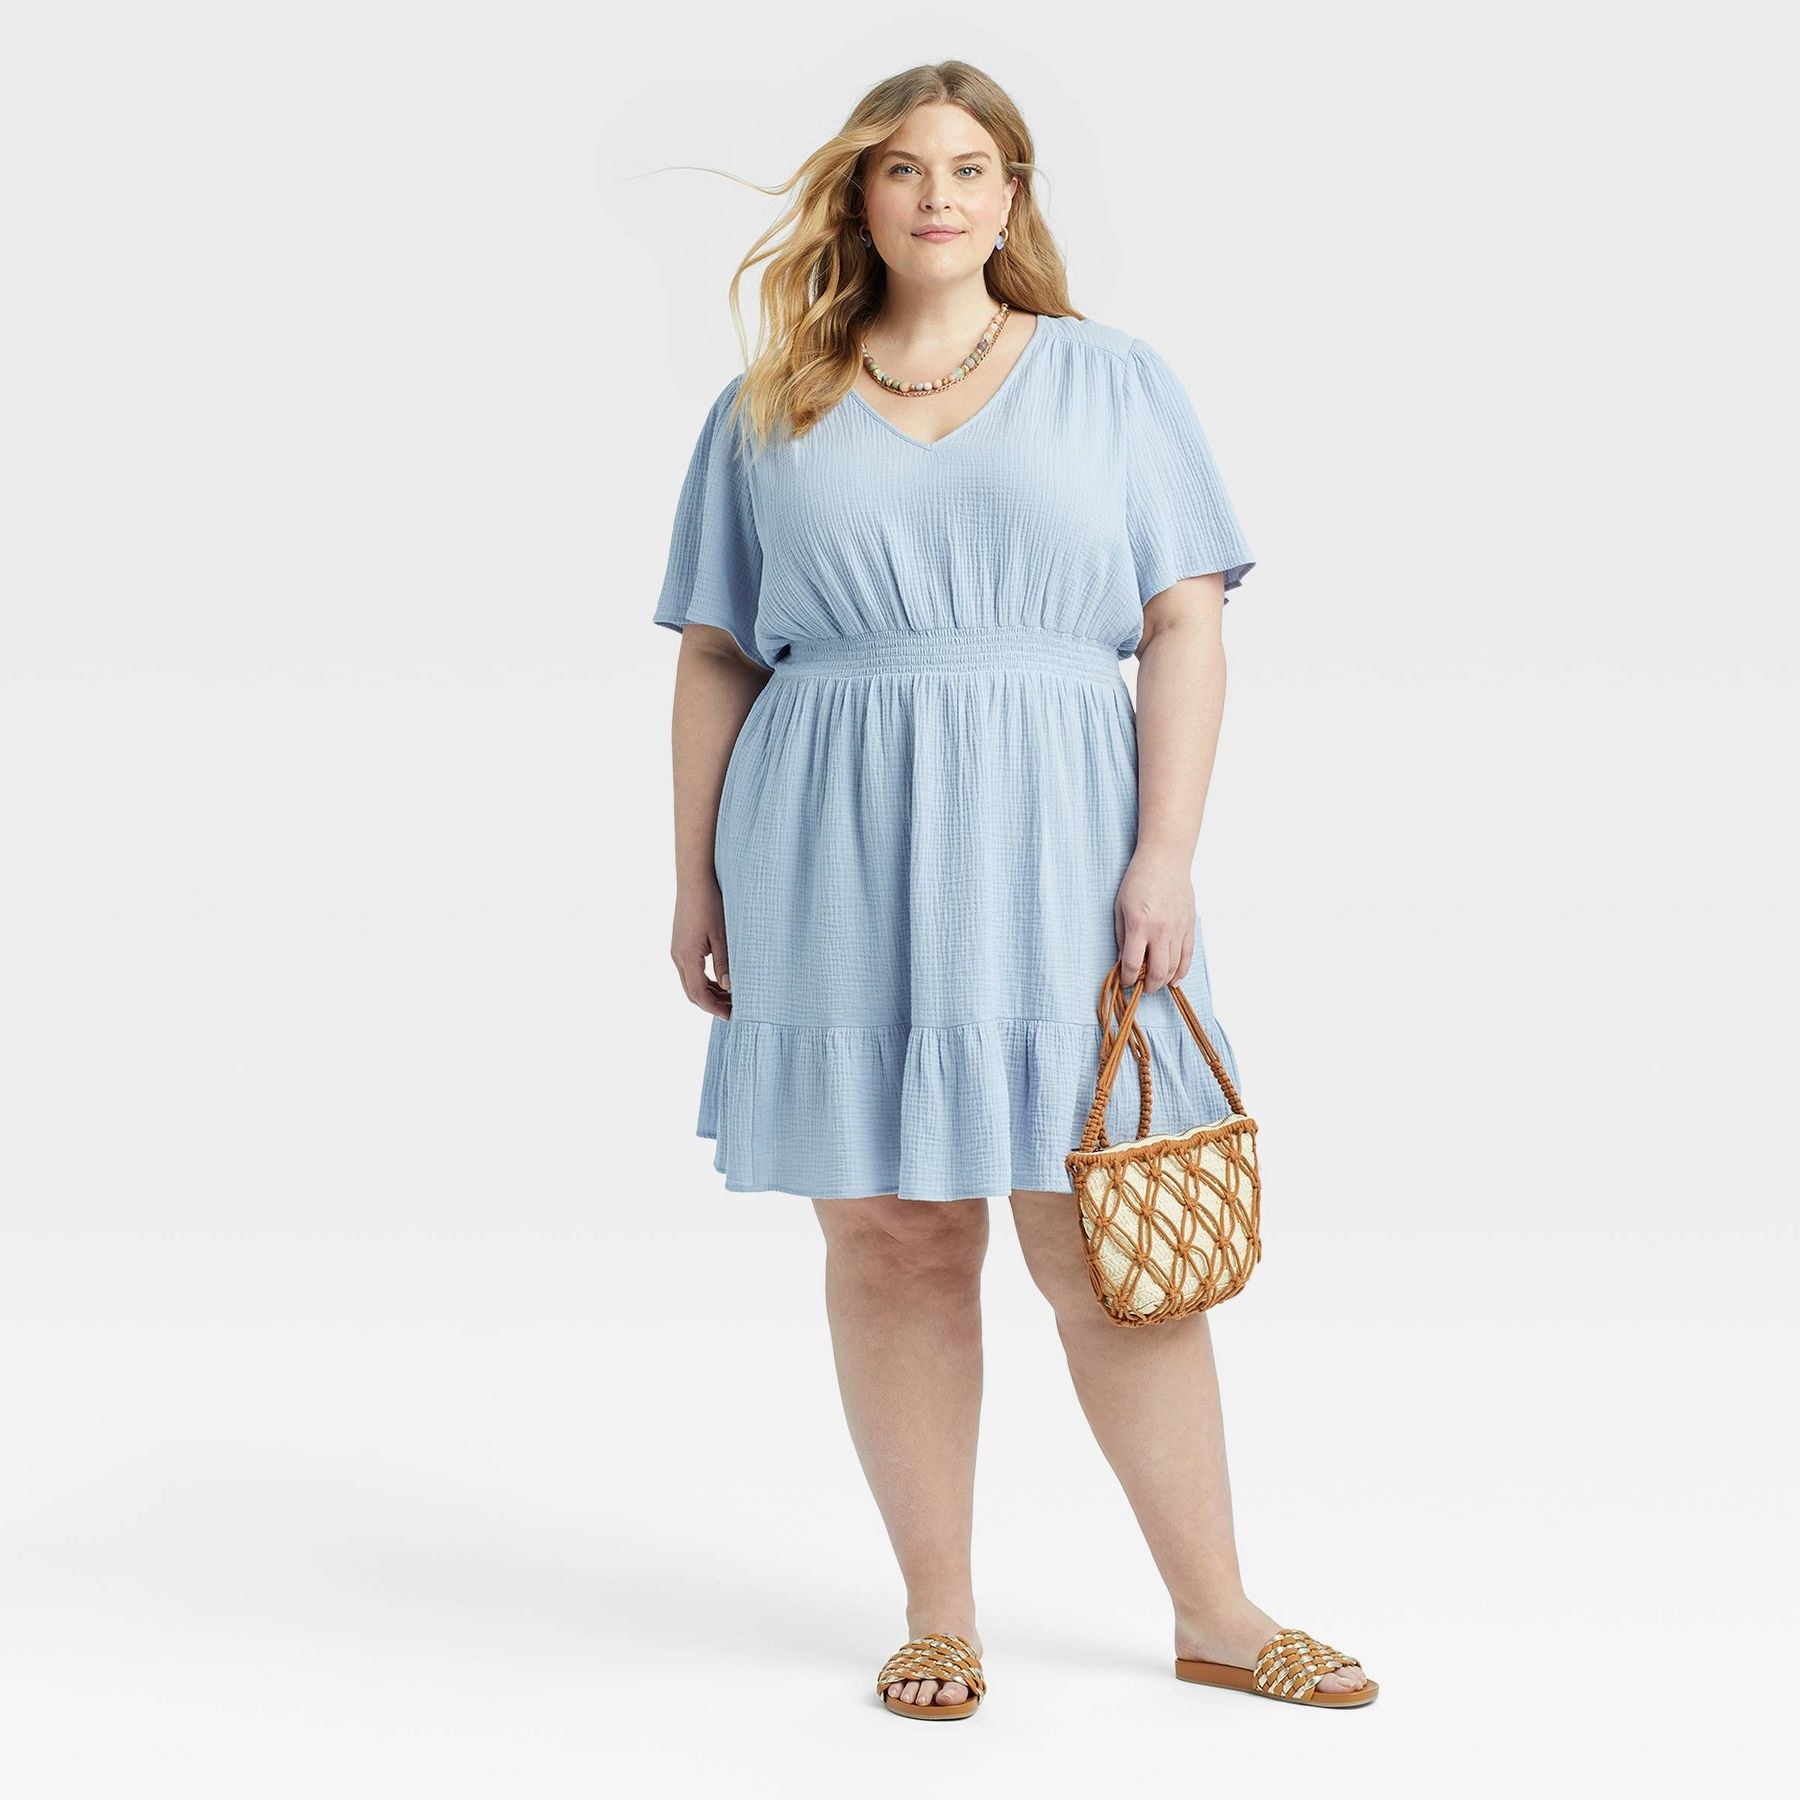 model wearing the dress in light blue